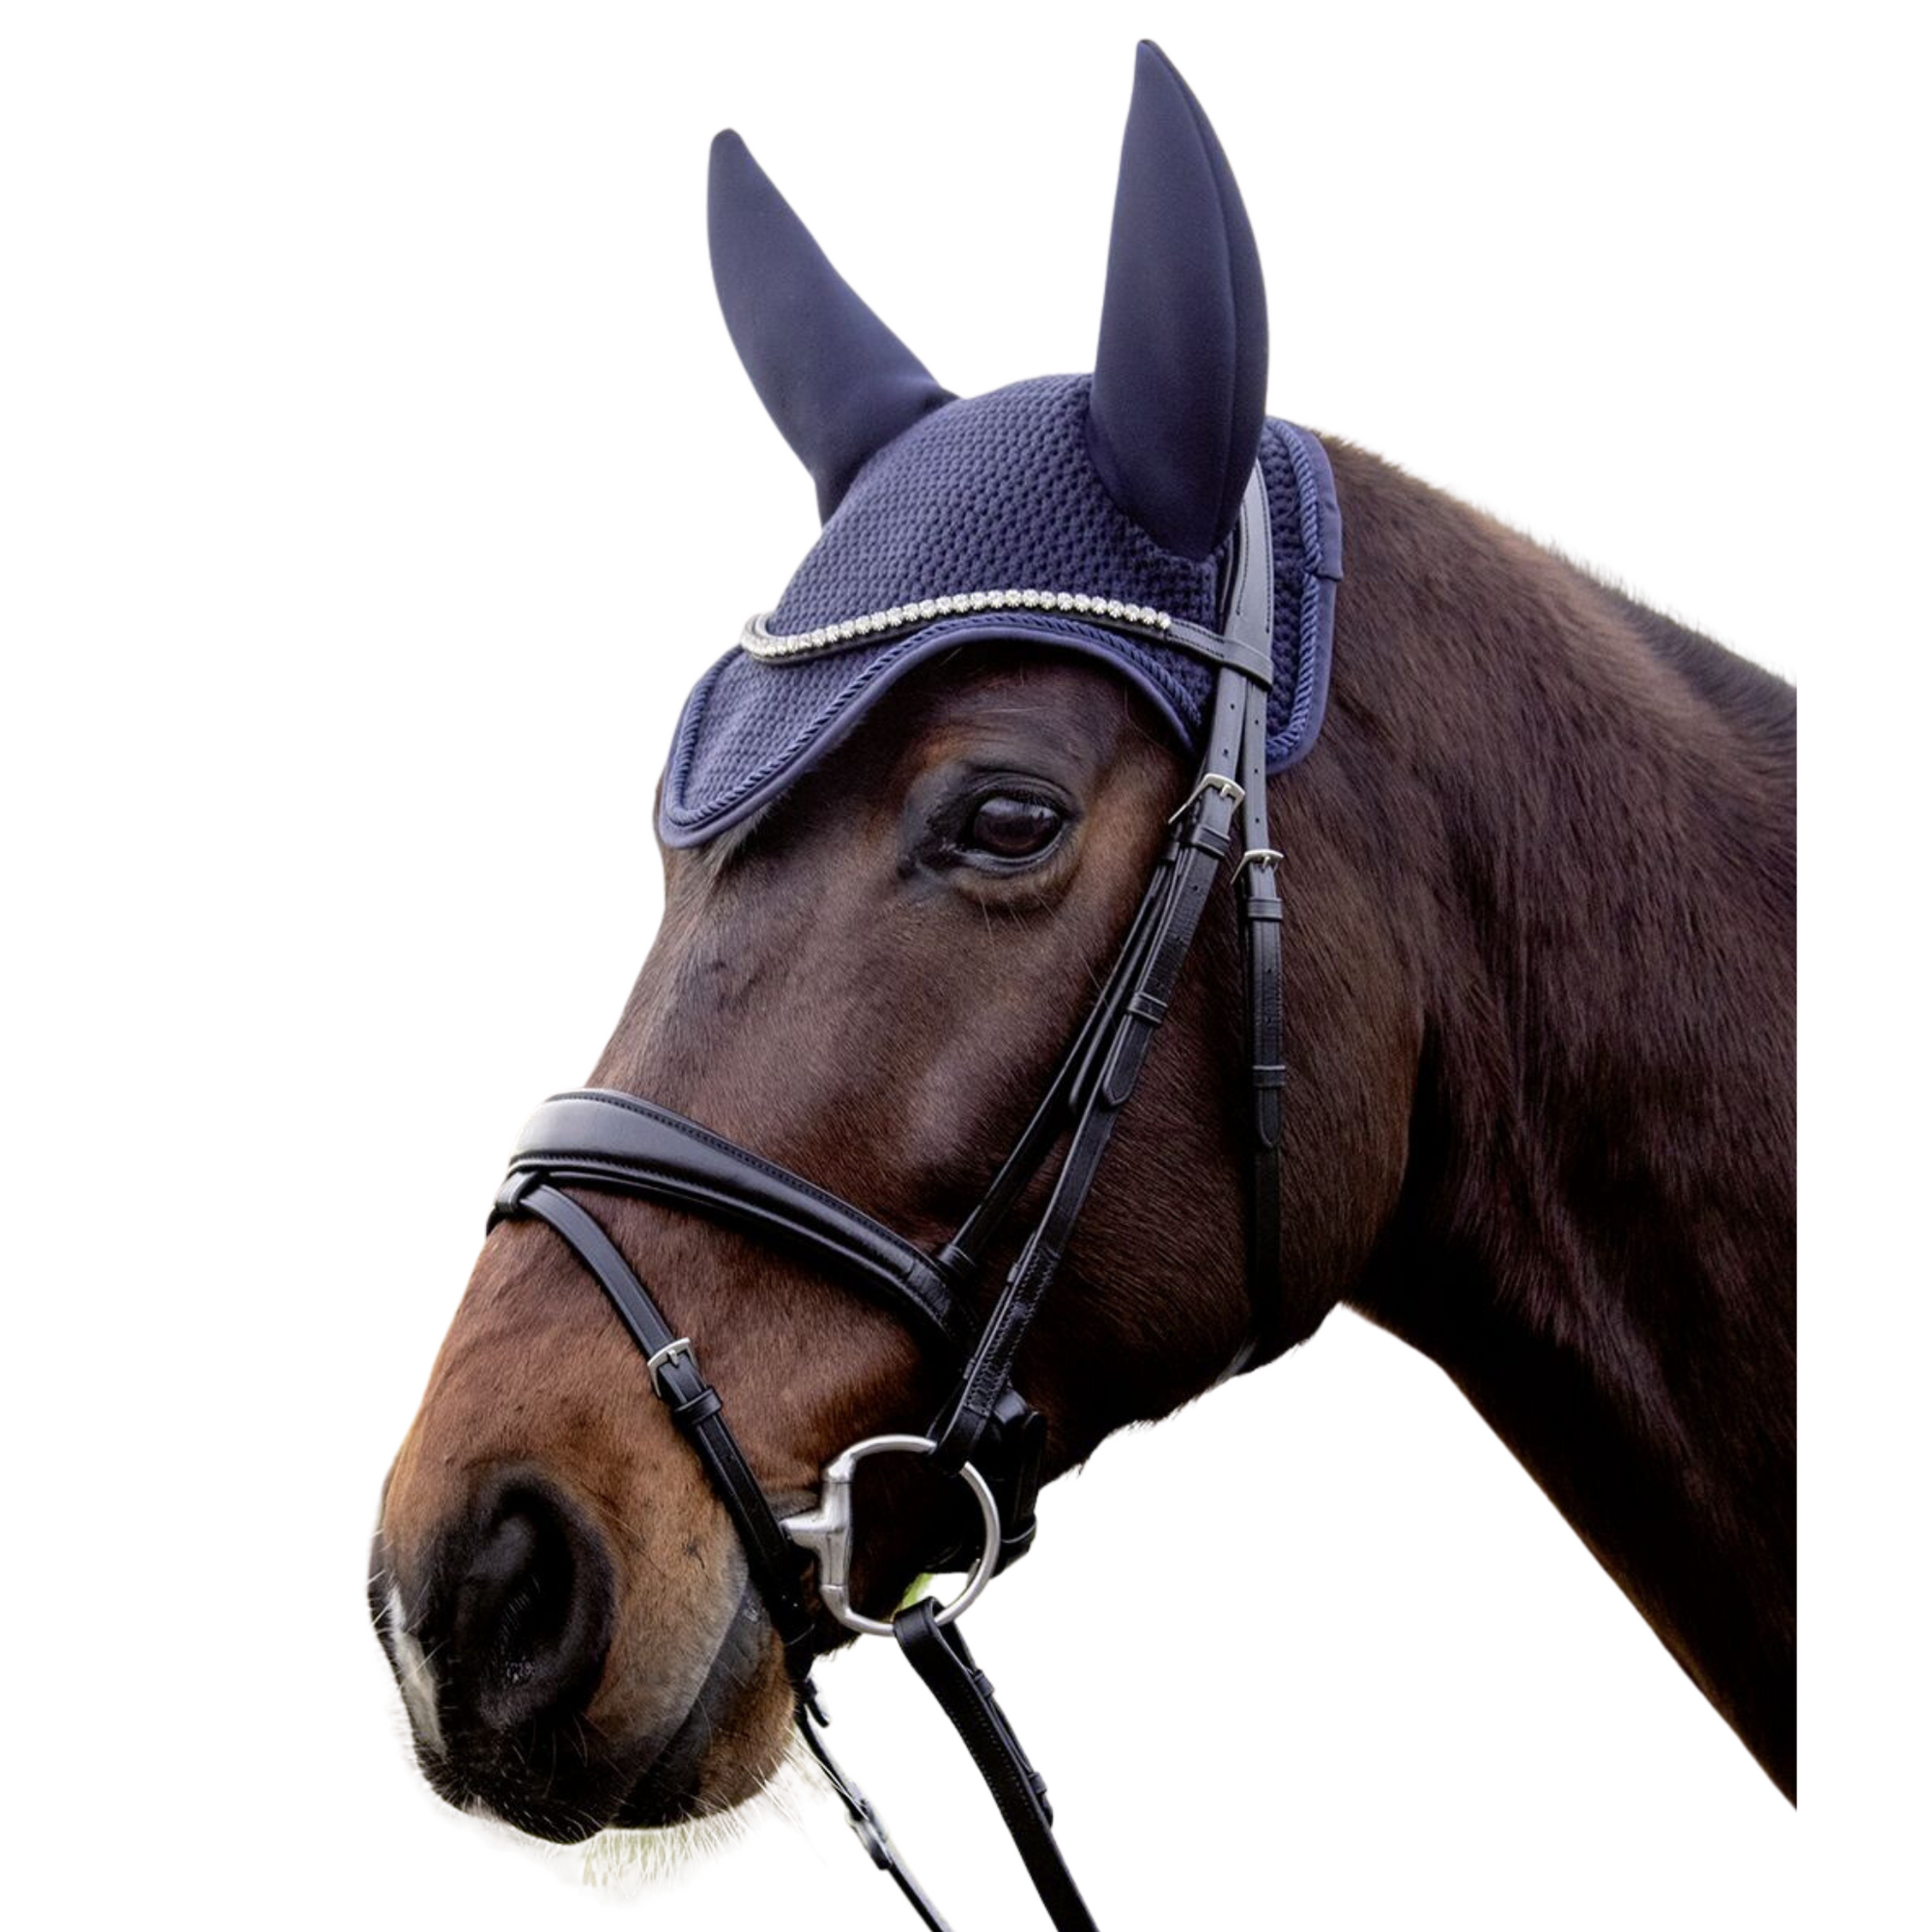 Horse wearing navy noise cancelling ear bonnet.